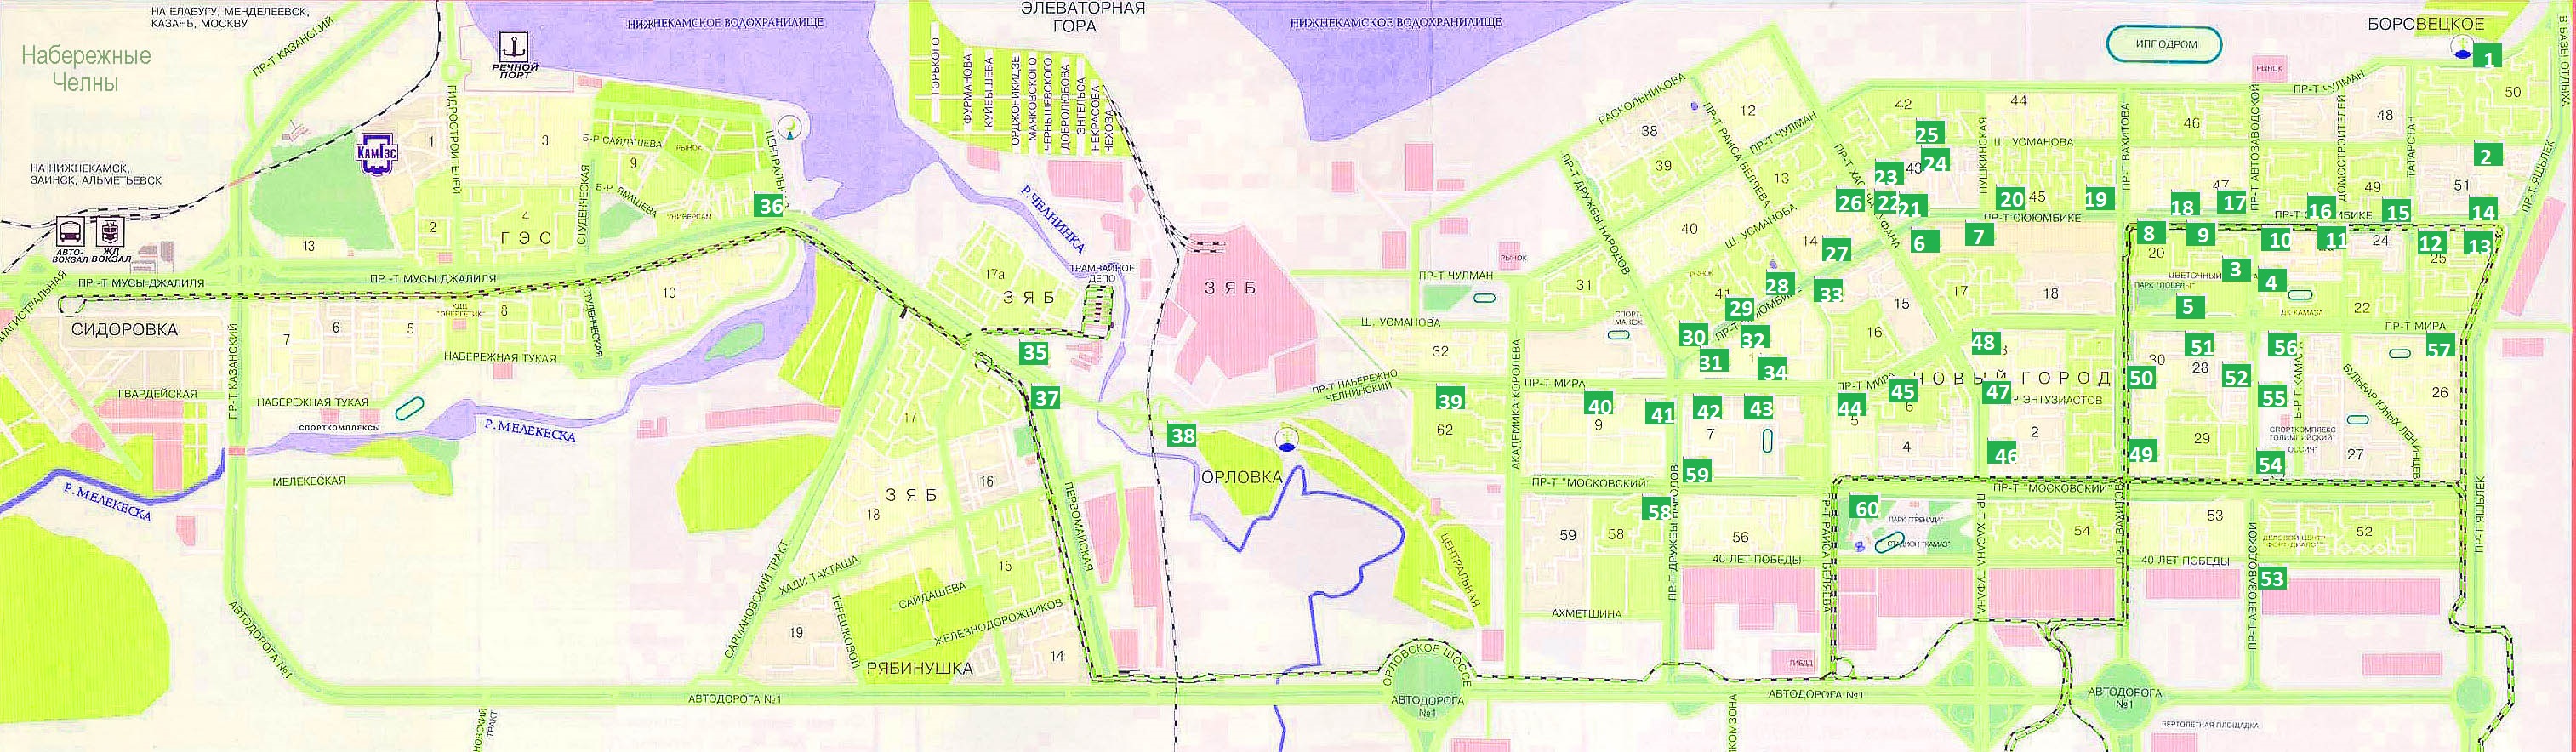 Карта комплексов Набережные Челны новый город